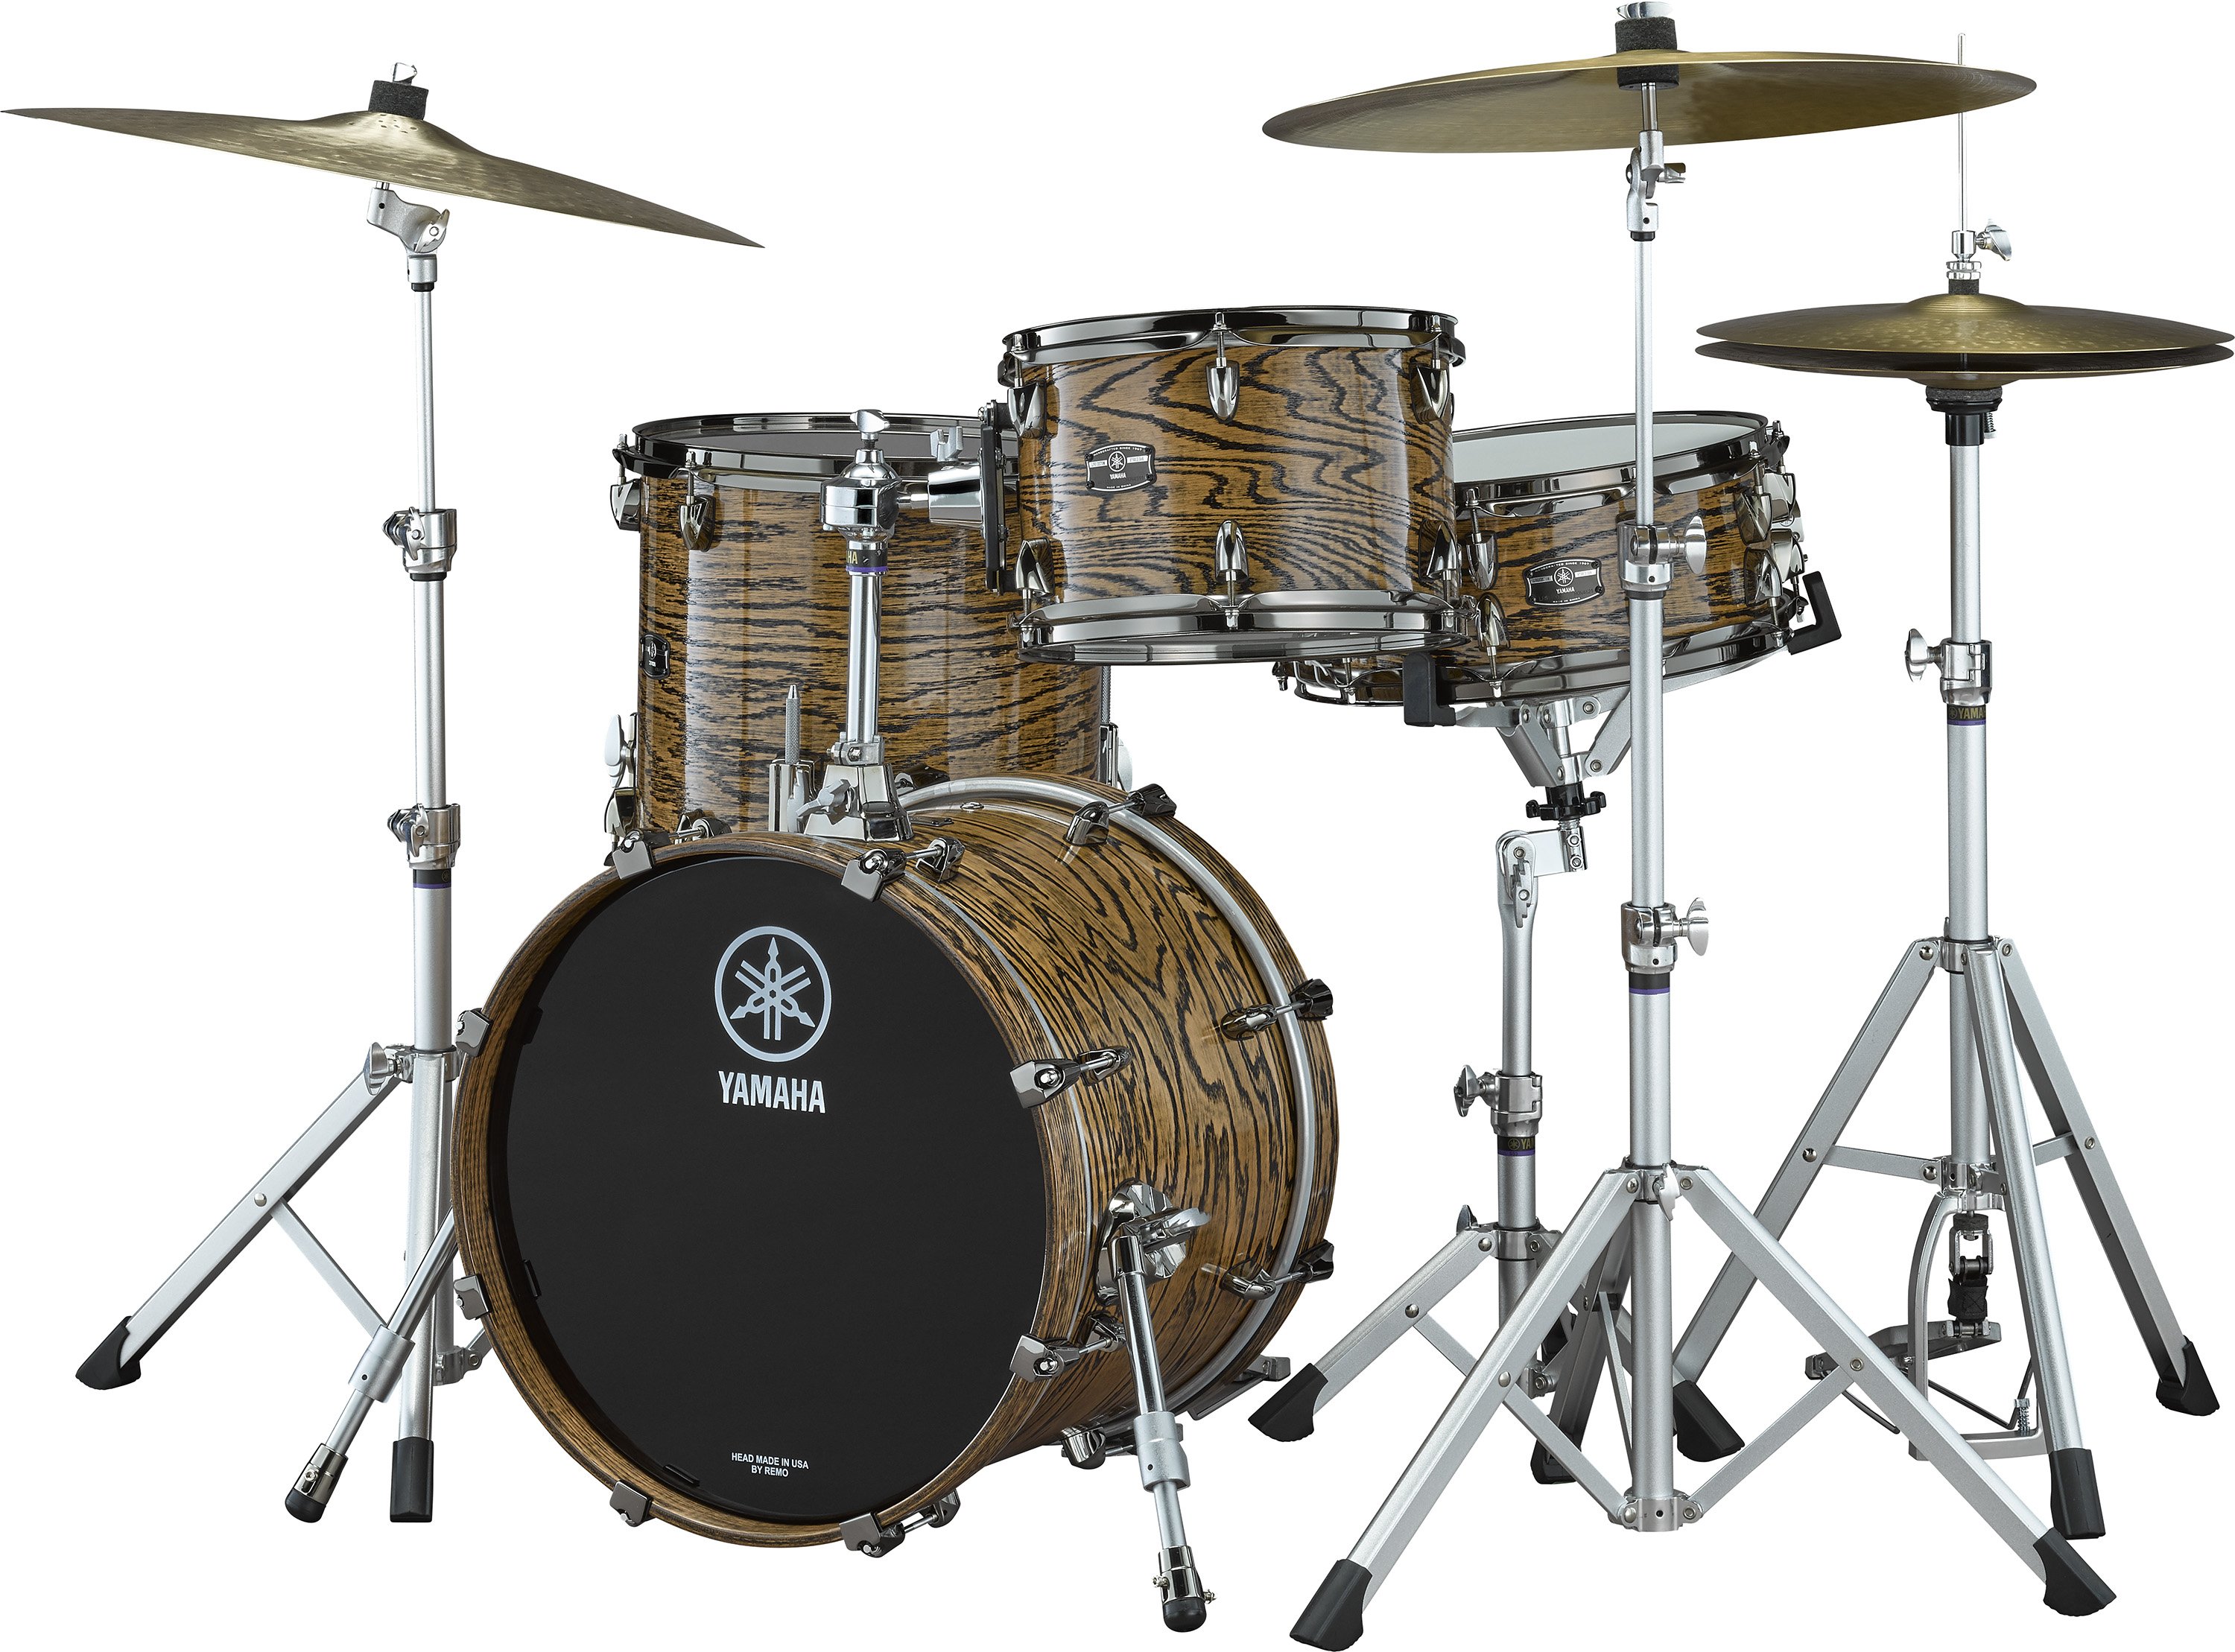 Live Custom Hybrid Oak - Size Variation - Drum Sets - Acoustic 